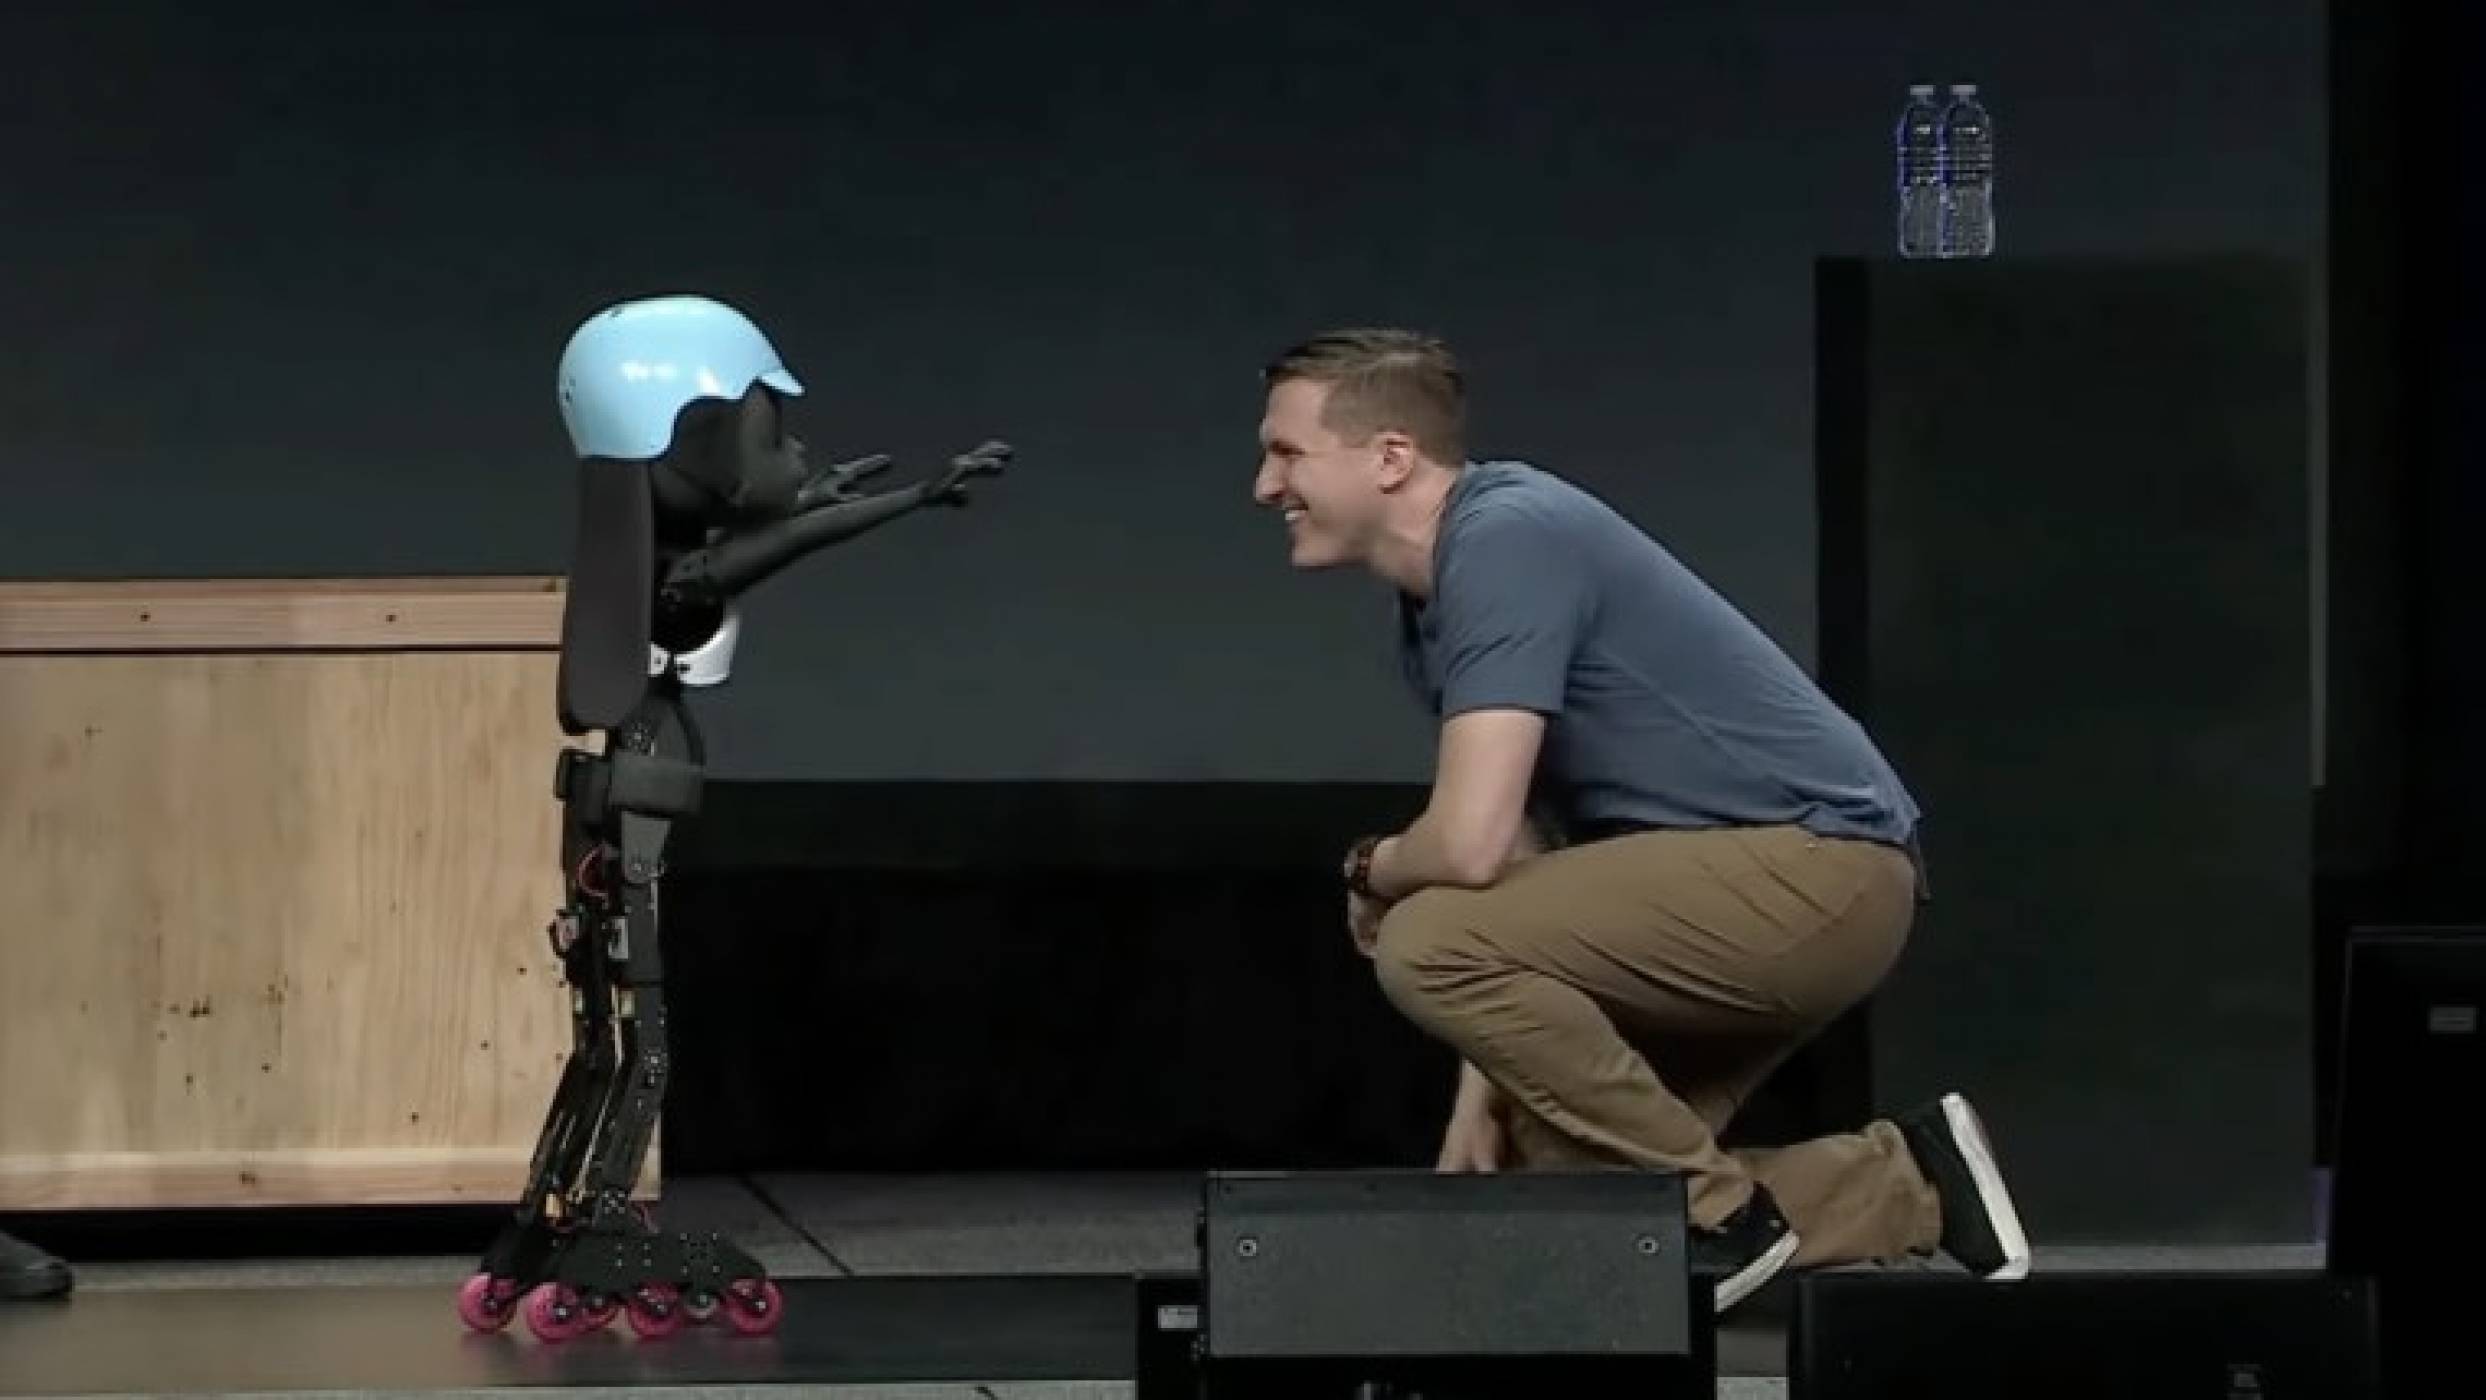 Вижте новия робот на Disney, който прави салто и се забавлява на сцената (ВИДЕО)